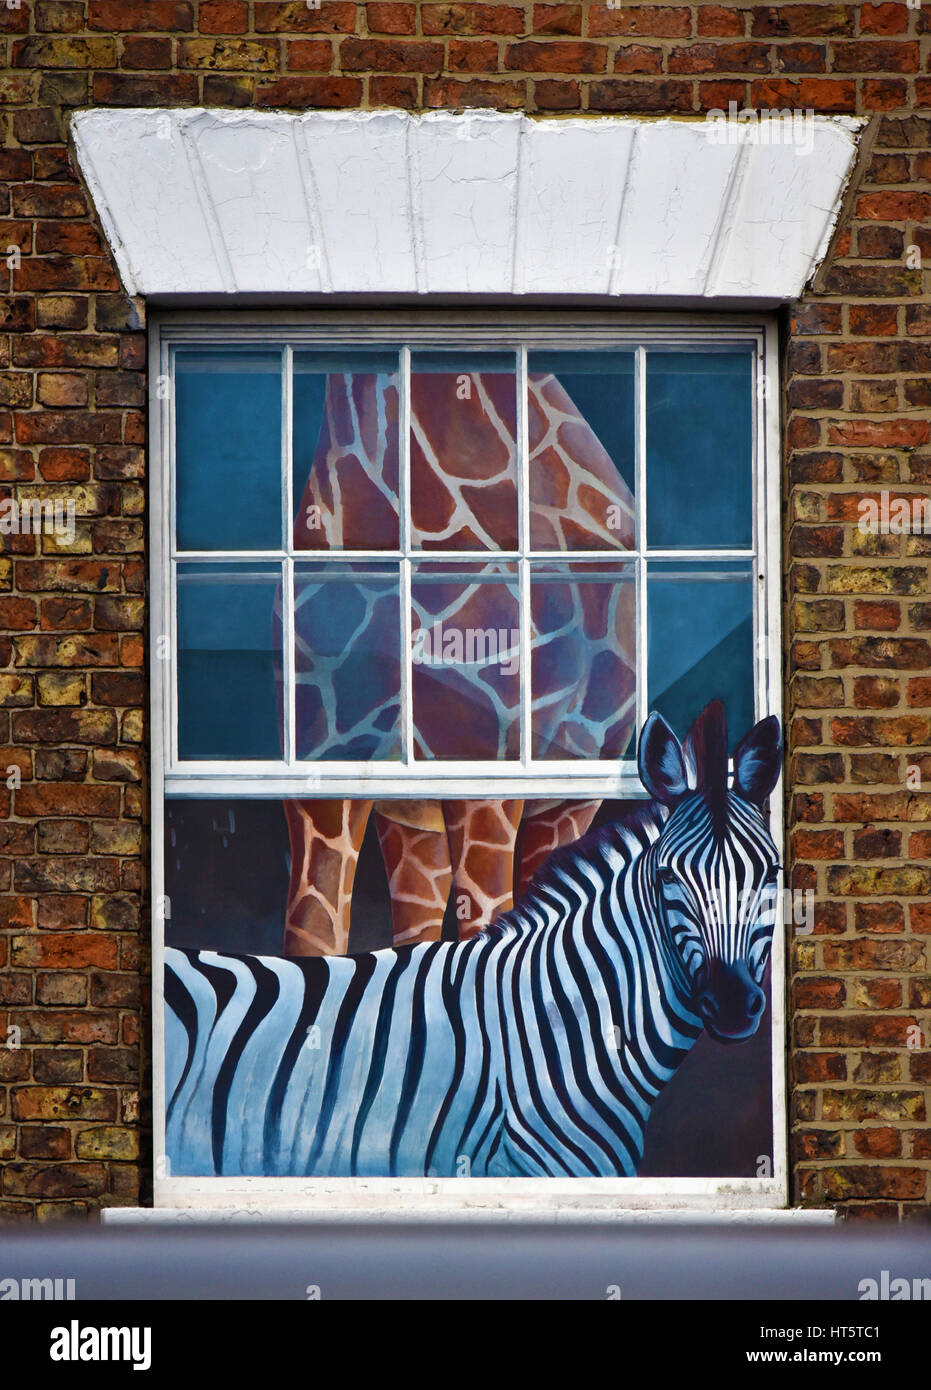 Zebra und Giraffe. Trompe-l ' œil gemalt Fenster. Knaresborough, High Street, North Yorkshire, England, Vereinigtes Königreich, Europa. Stockfoto